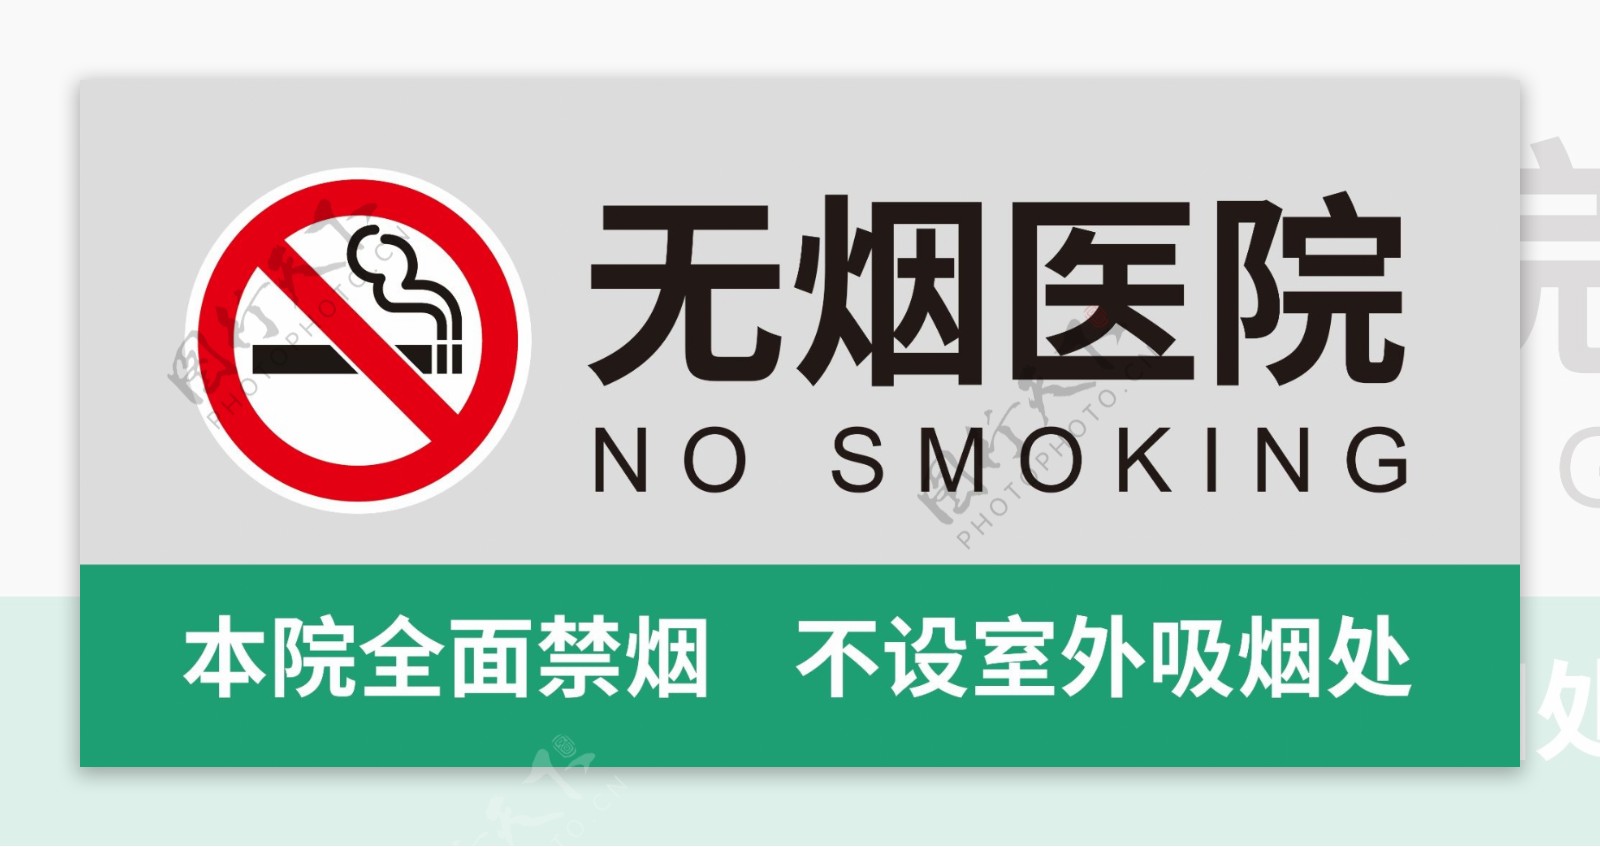 无烟医院禁烟指示牌